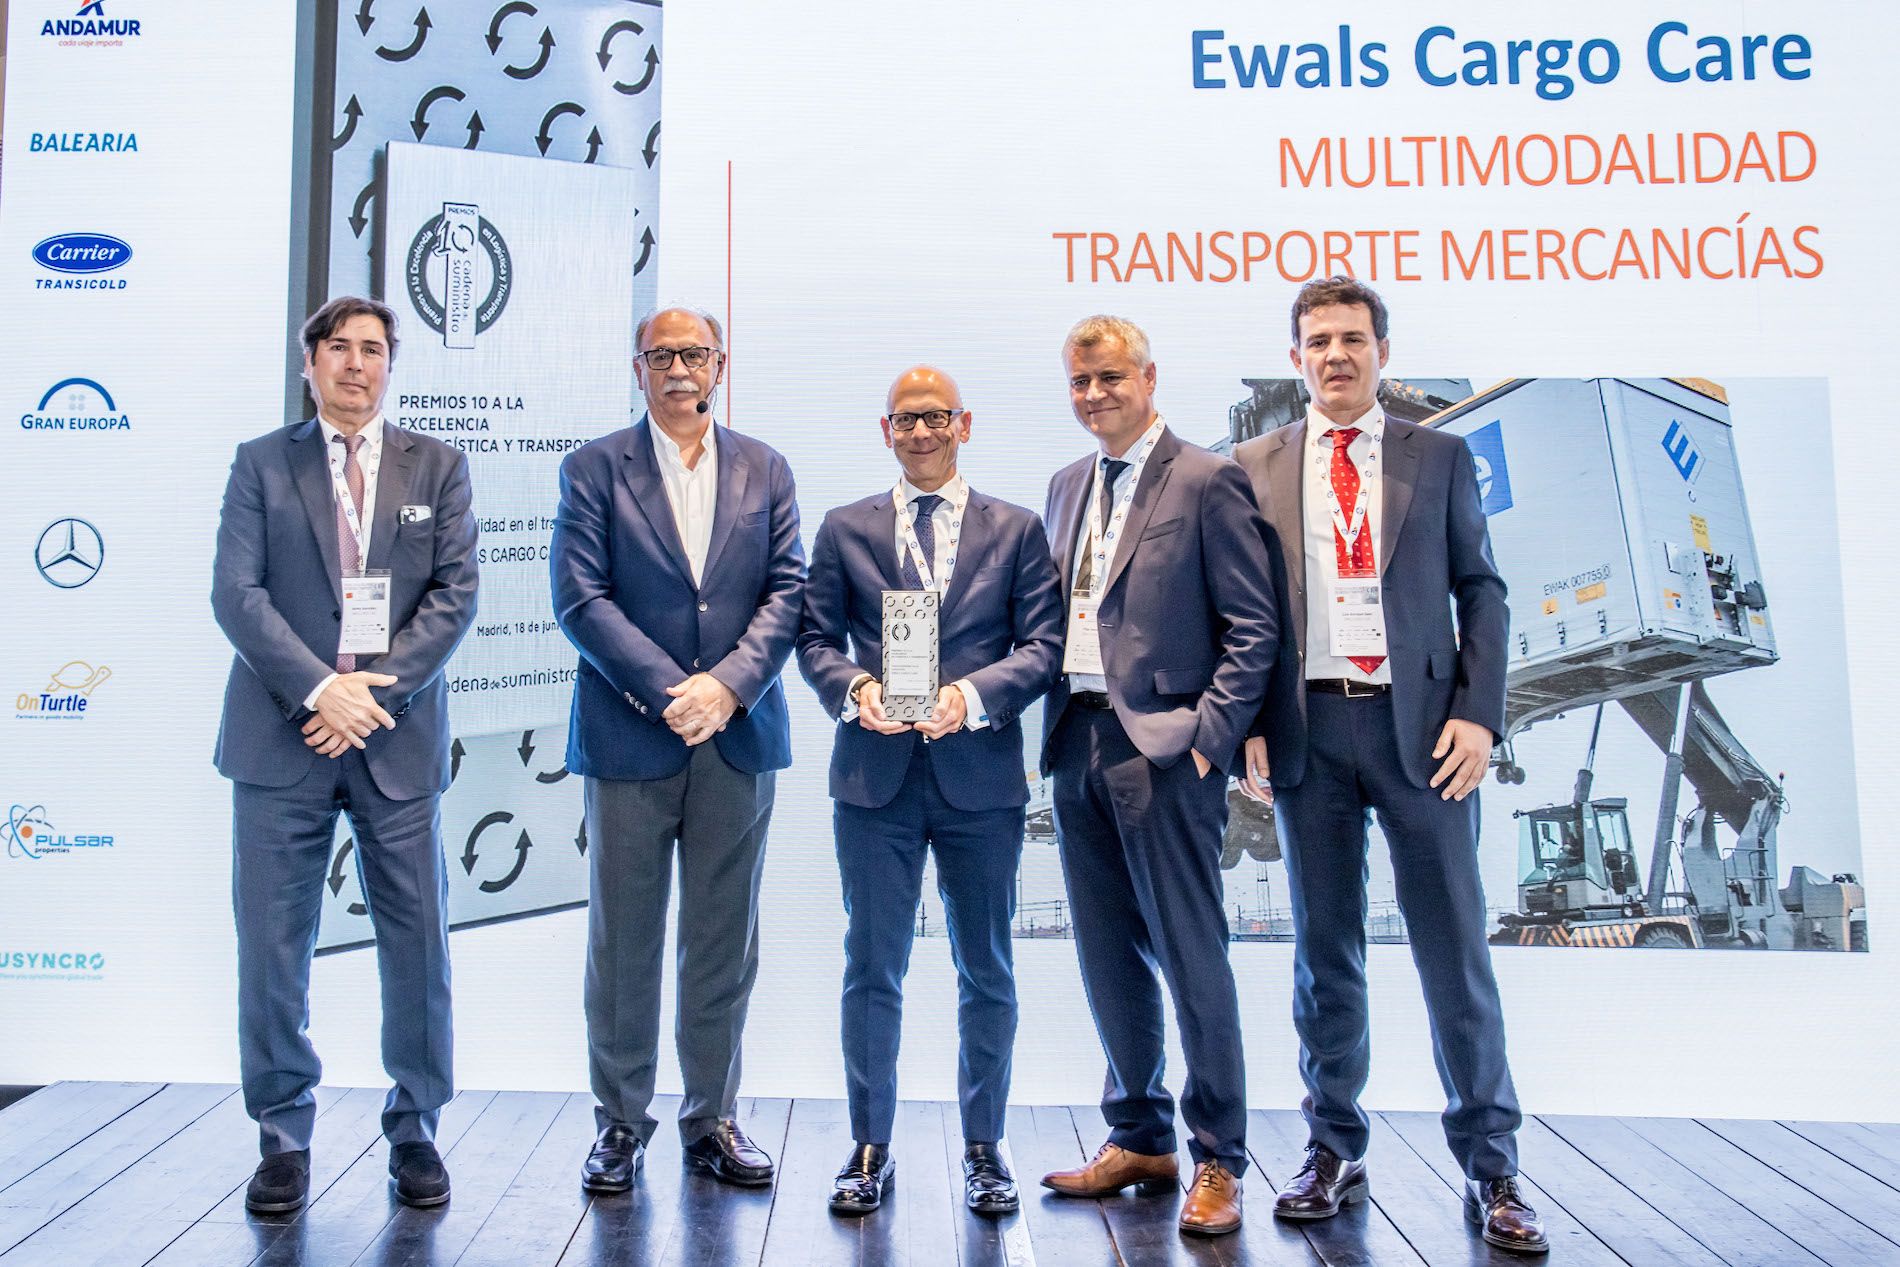 En el centro, Pedro López Muniesa, director regional para el sur de Europa de Ewals Cargo Care, recoge el premio.